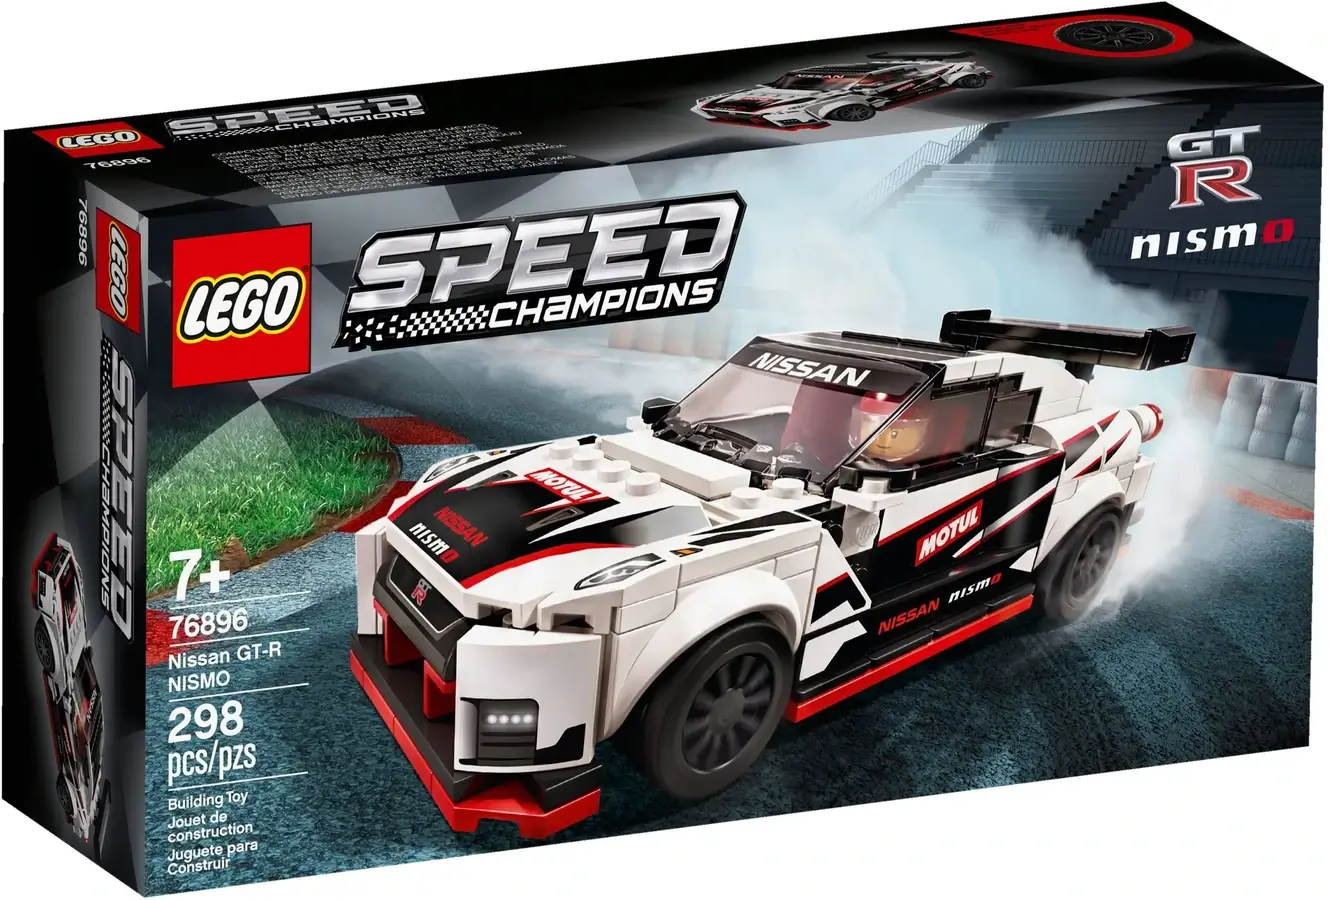 Pudełko zestawu 76896 z serii LEGO® Speed Champions – Nissan GT-R NISMO